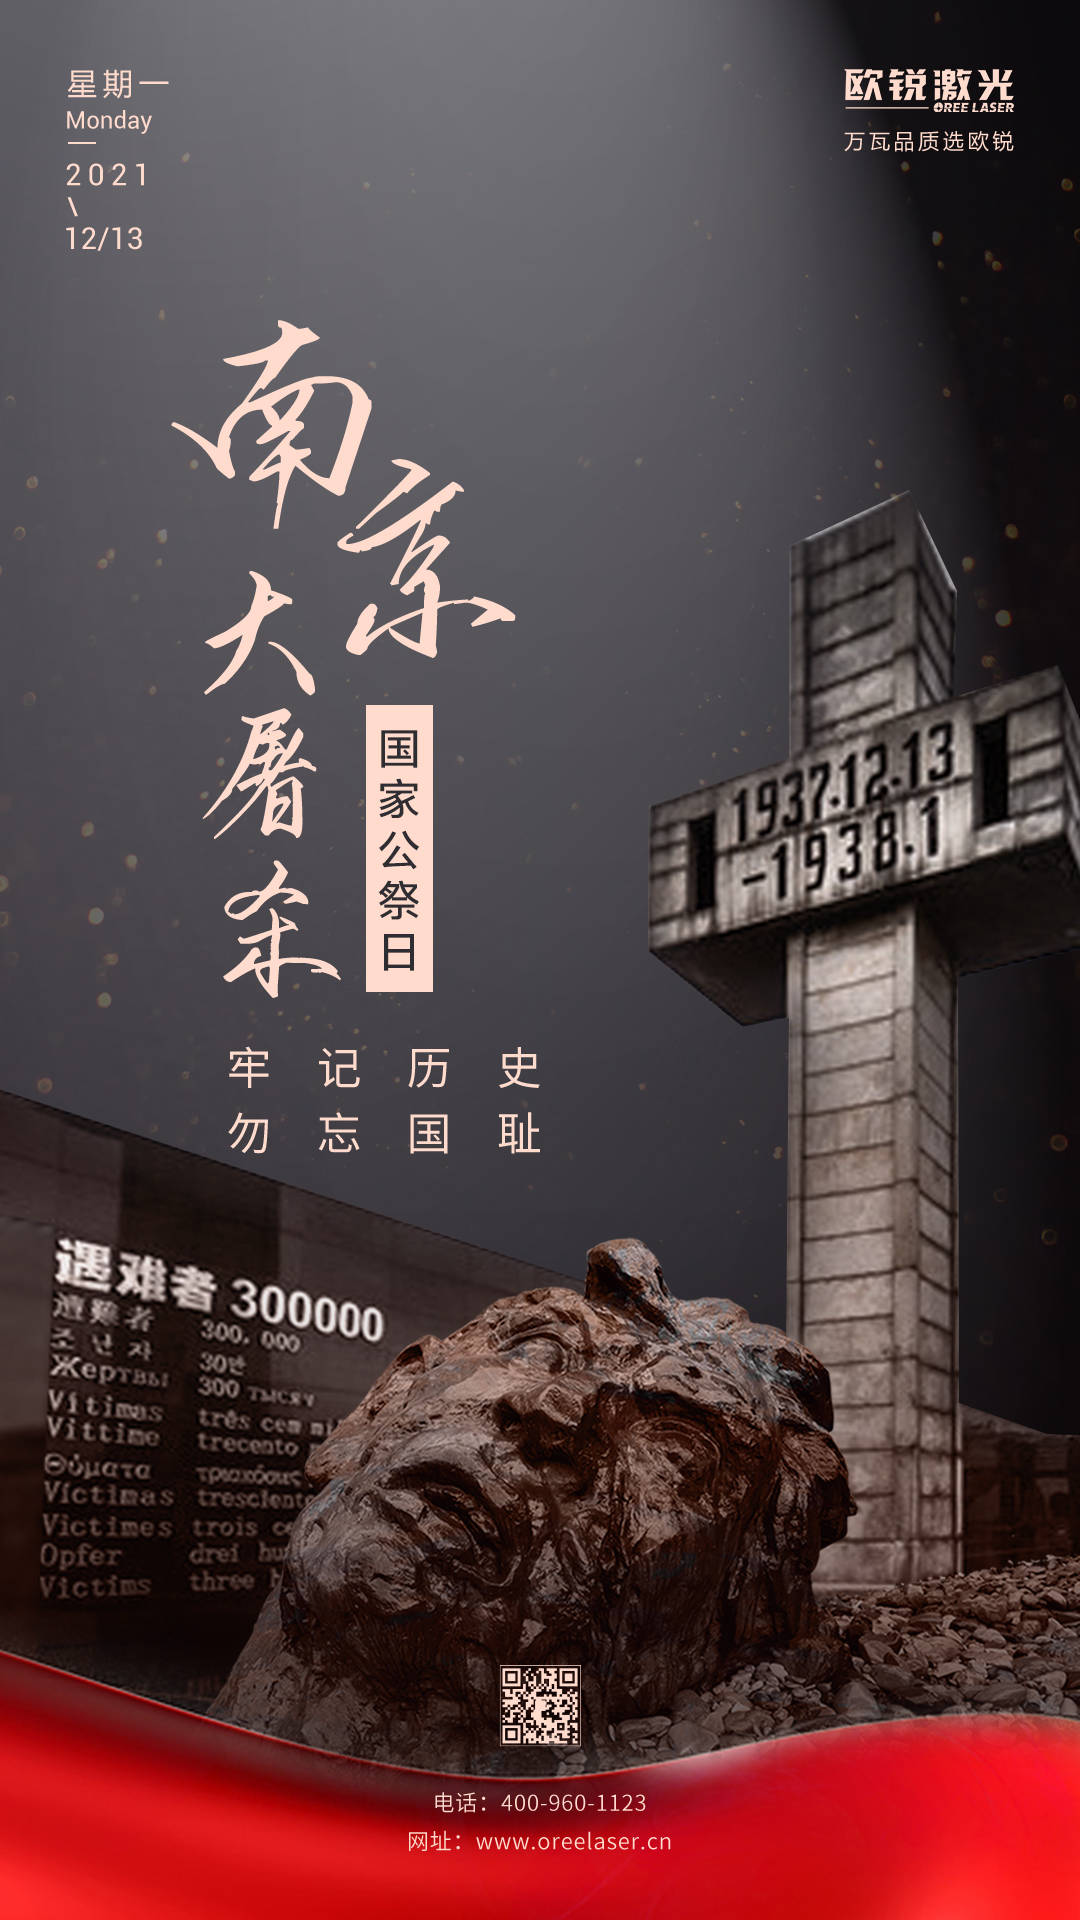 勿忘刺痛记忆 永续和平追求——写在第四个南京大屠杀死难者国家公祭日之际